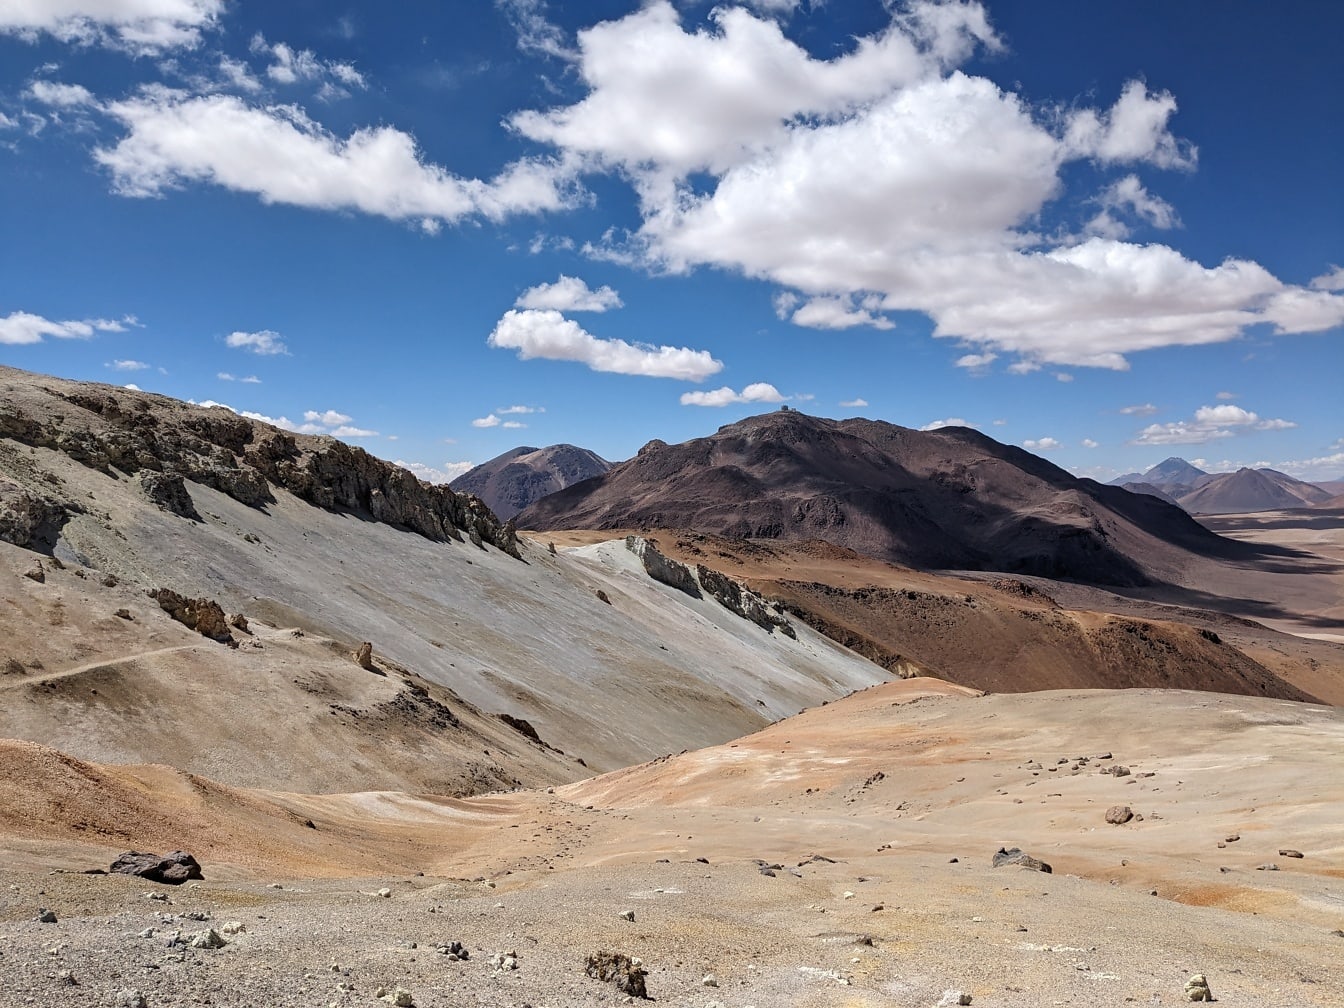 Unglaubliche Landschaft einer trockensten Wüste in großer Höhe auf der peruanischen Hochebene